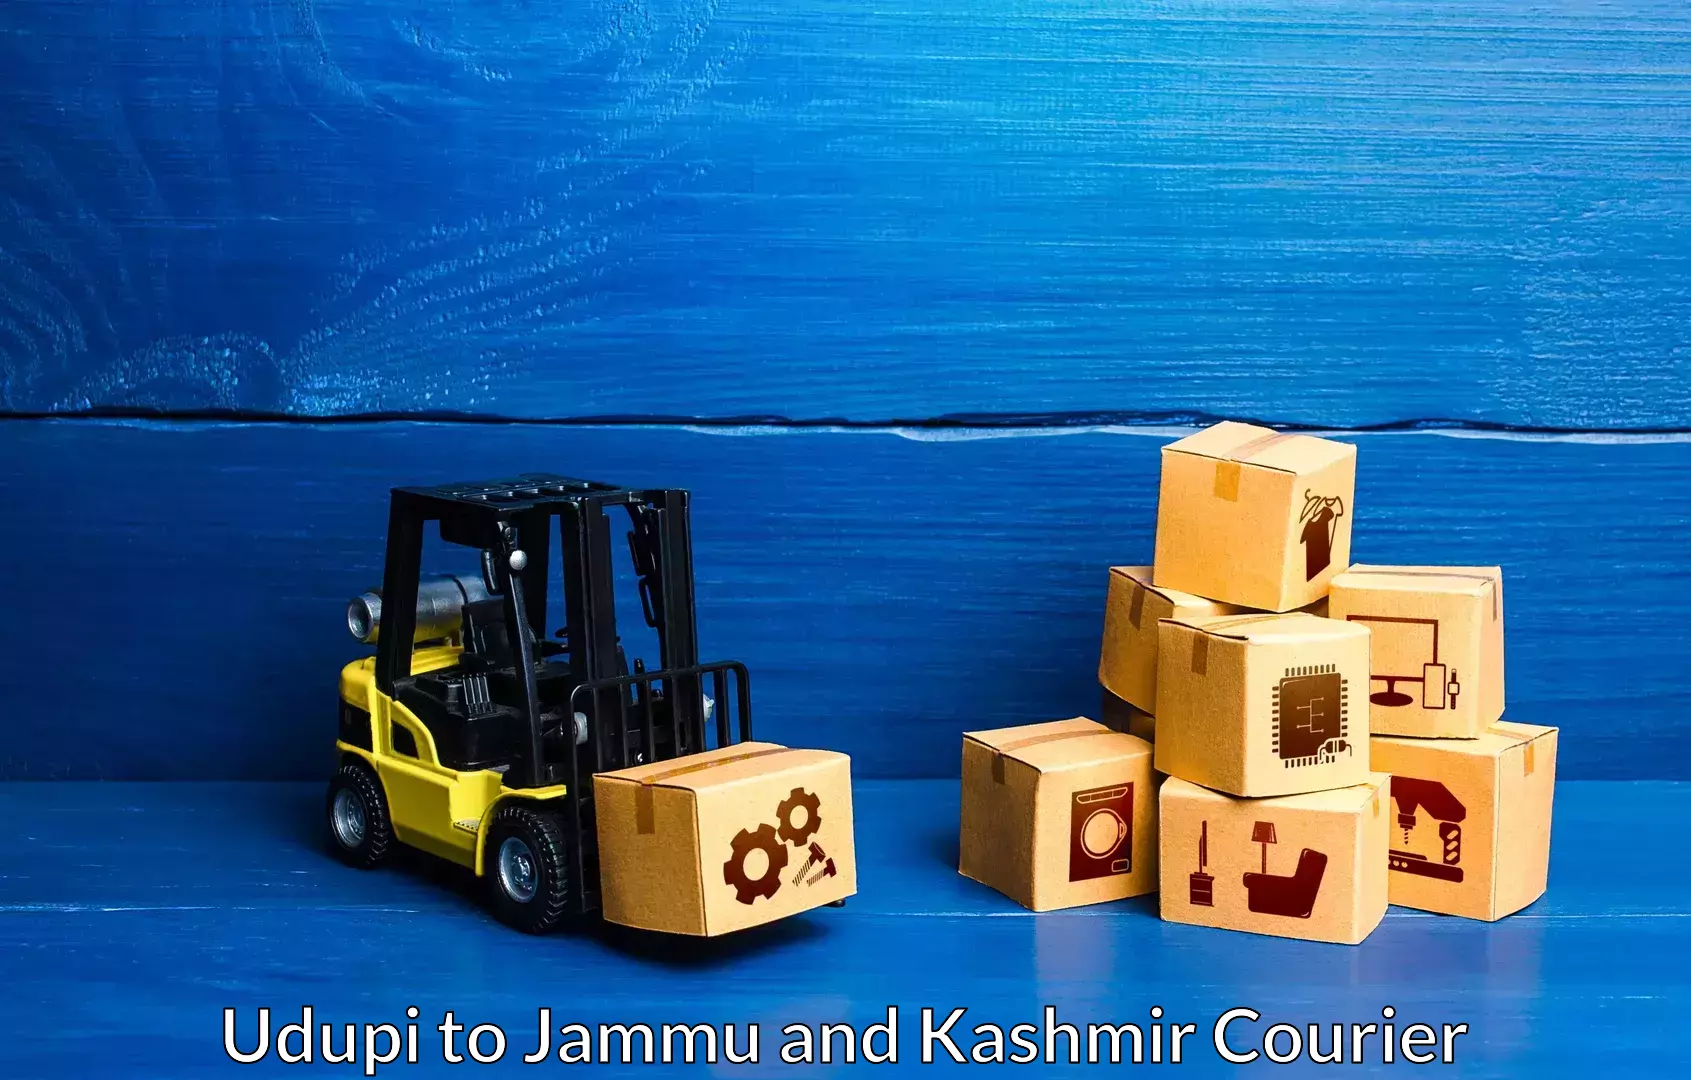 Furniture delivery service Udupi to NIT Srinagar